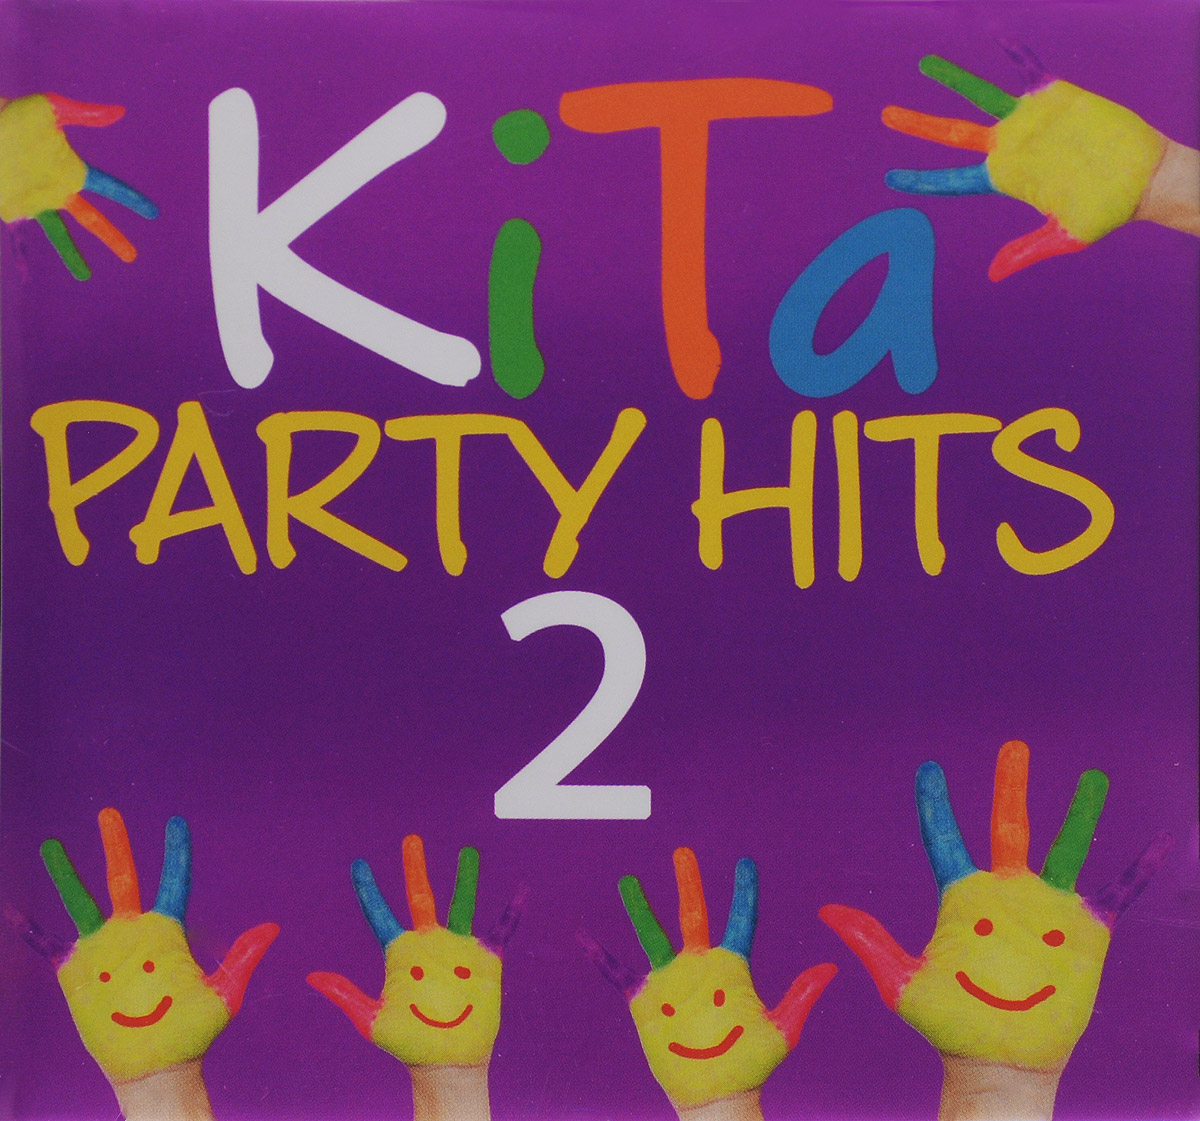 KiTa Party Hits 2